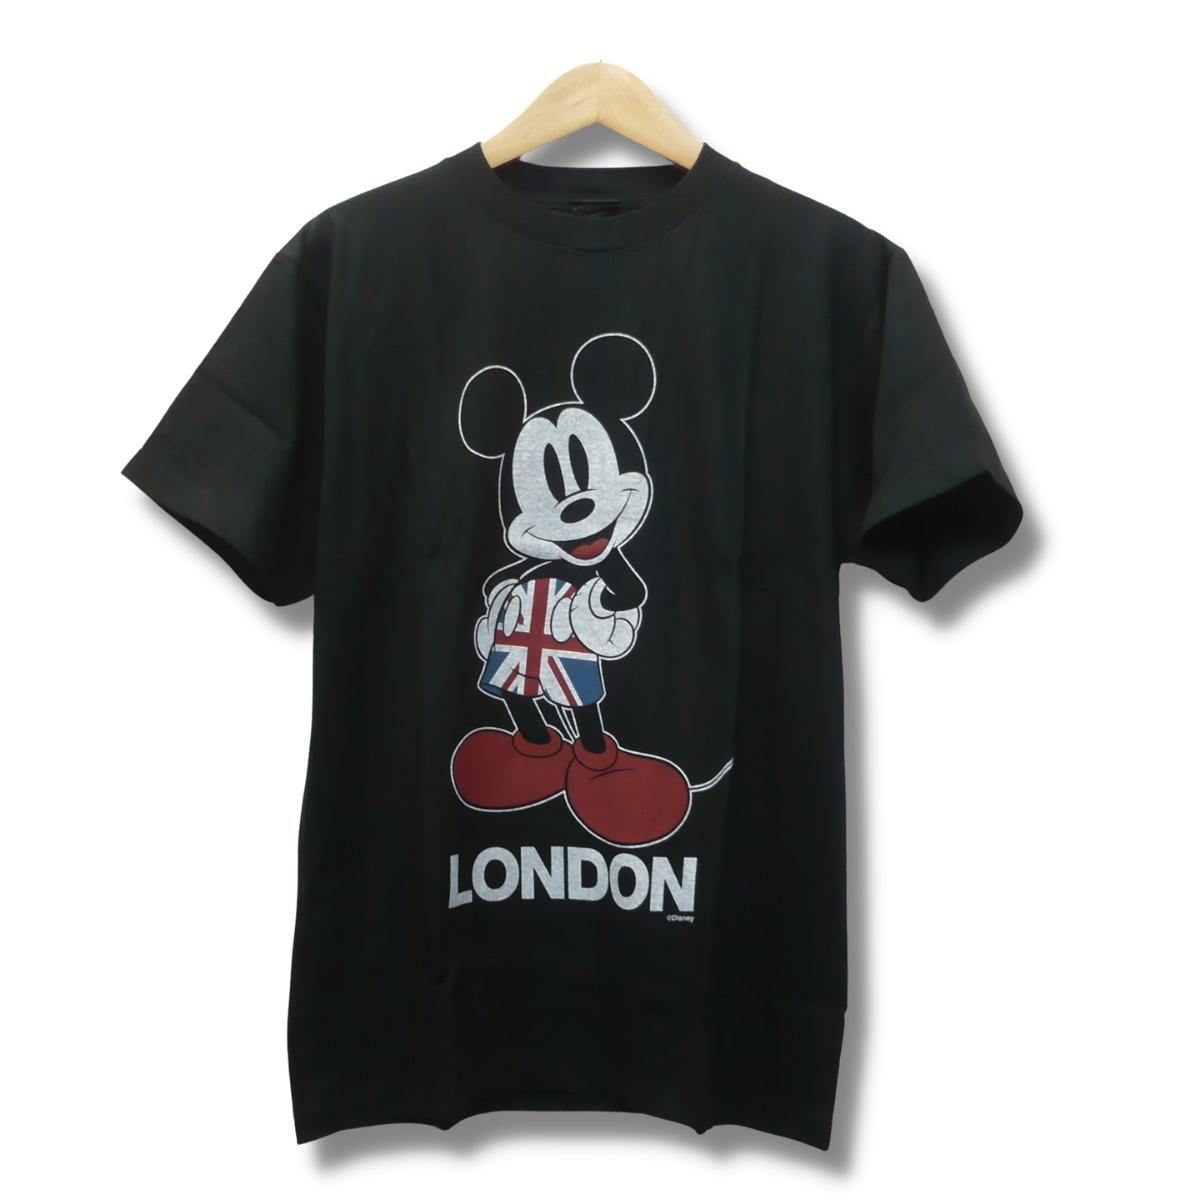 即決☆ミッキーマウス スパシオ BLK/Mサイズ 半袖Tシャツ 送料無料 フットサル サッカー 普段着にもOK 黒 ブラック